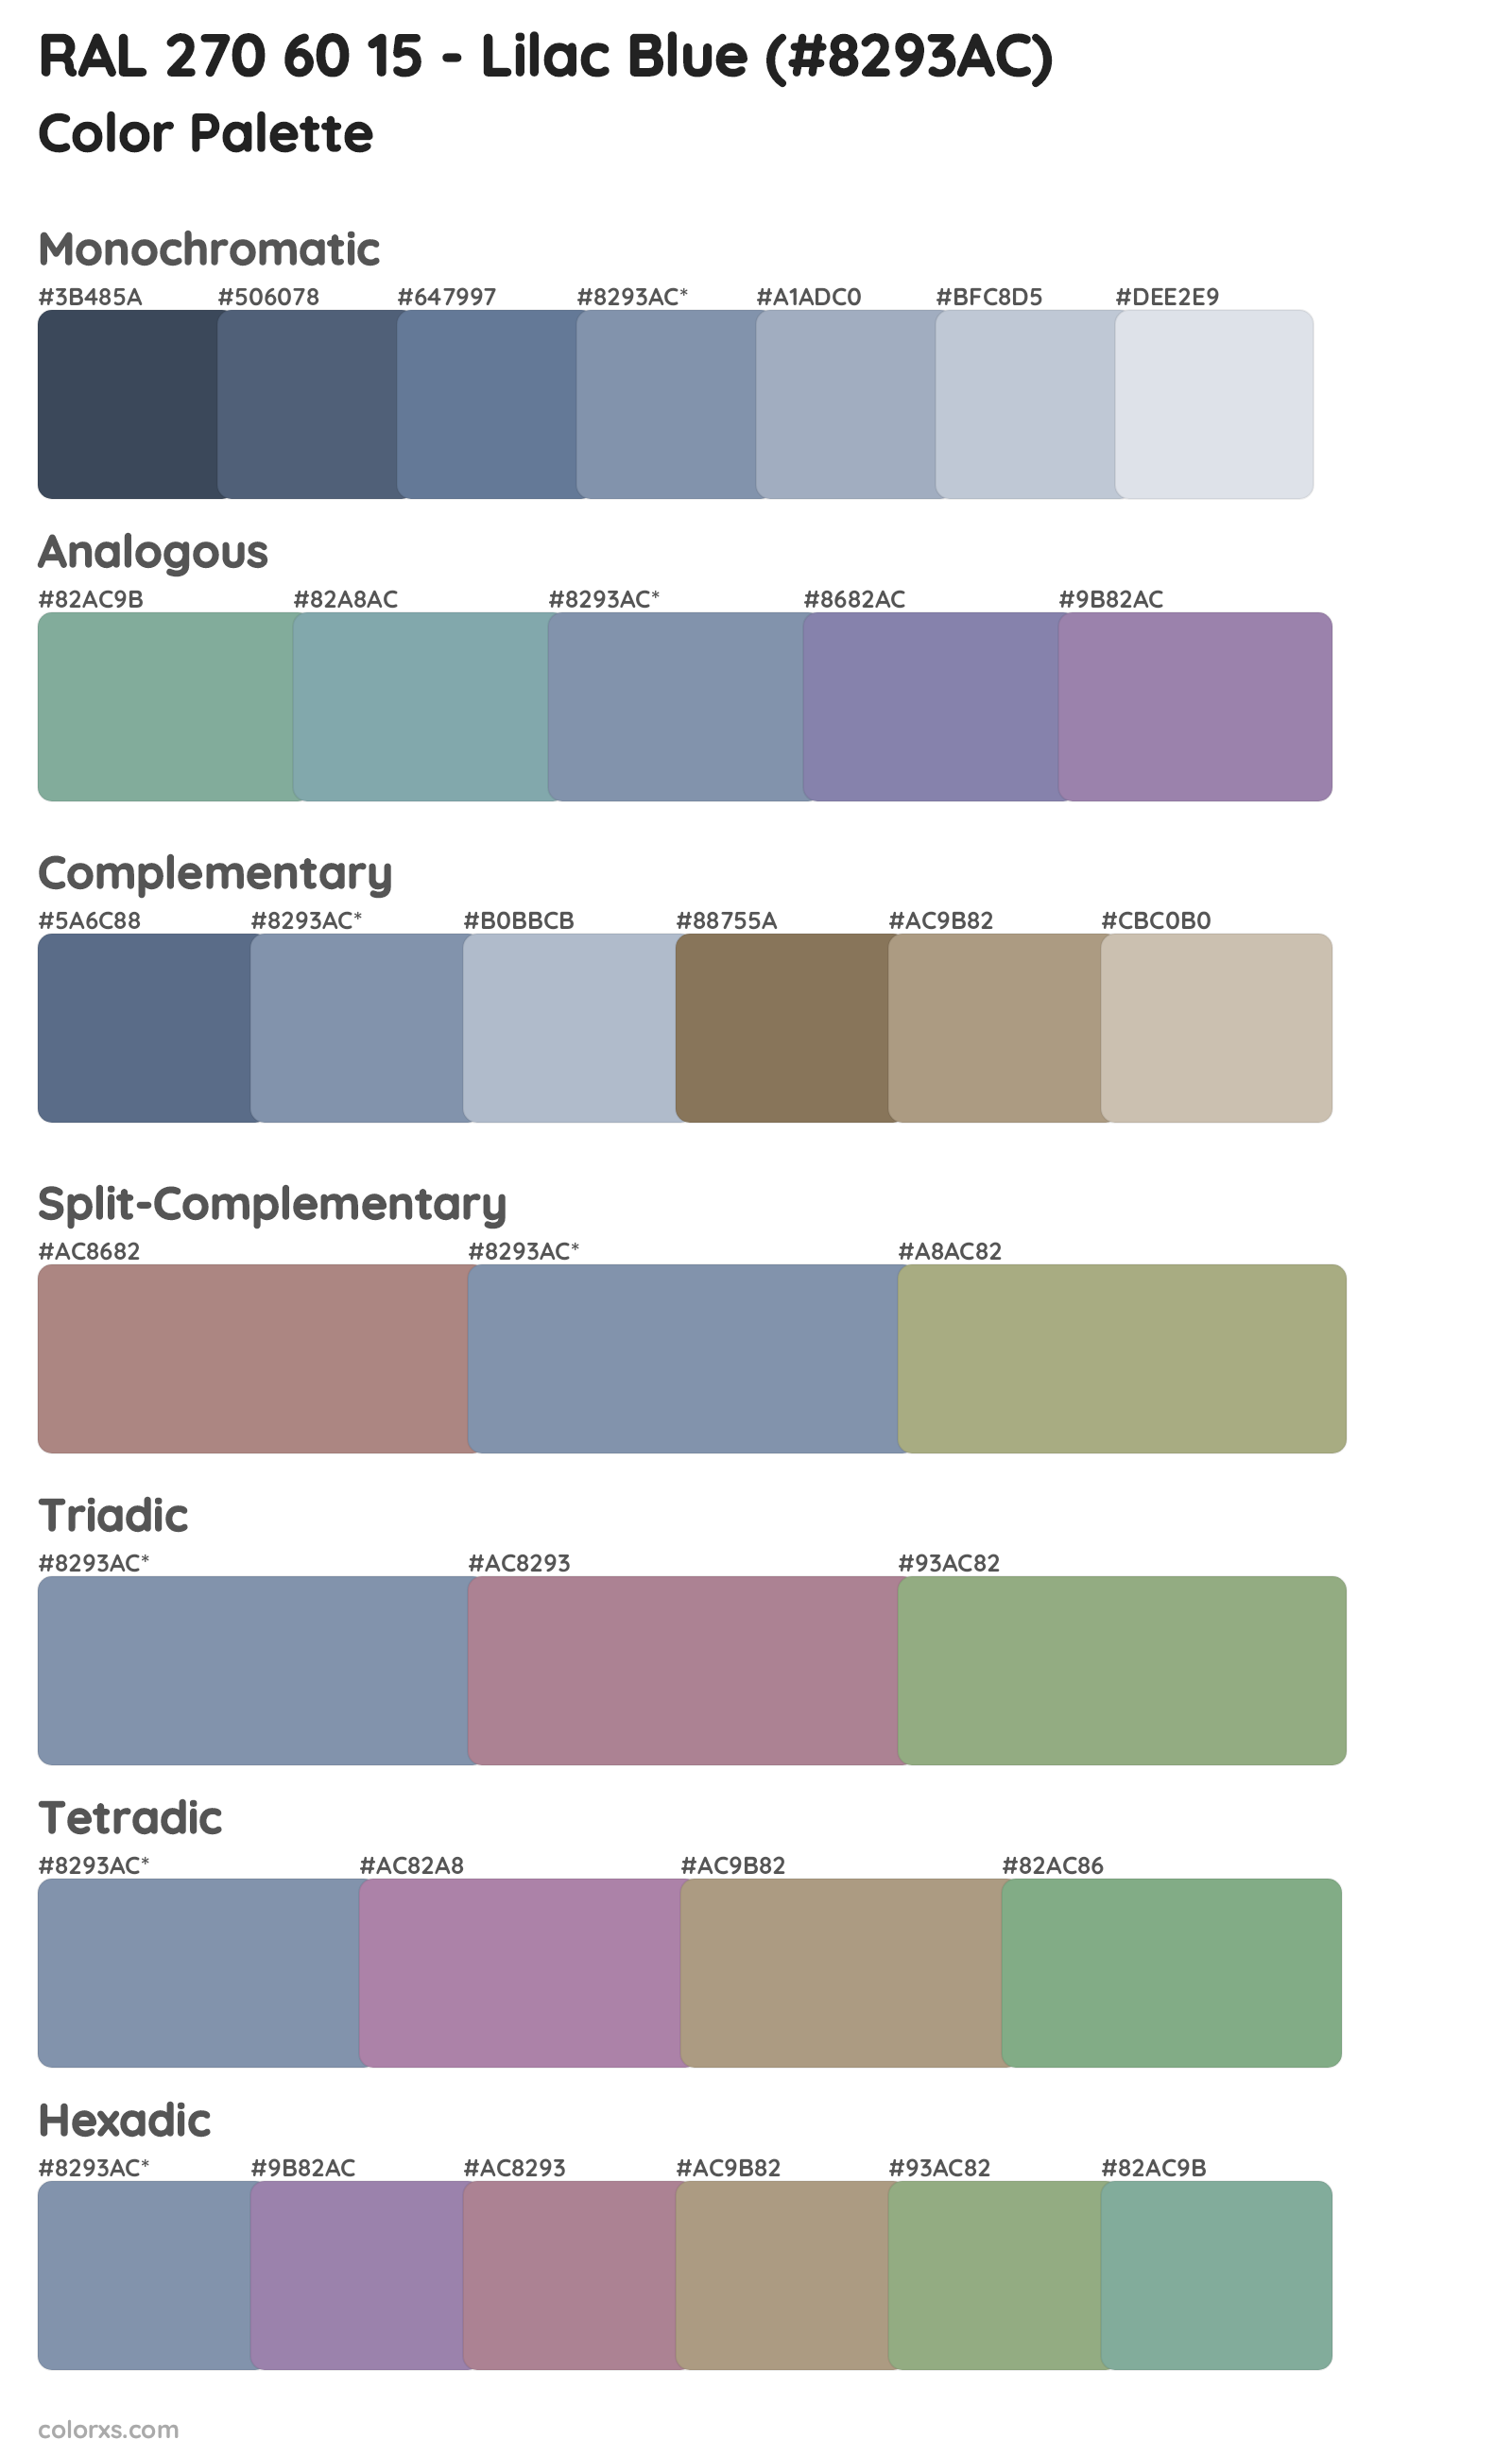 RAL 270 60 15 - Lilac Blue Color Scheme Palettes